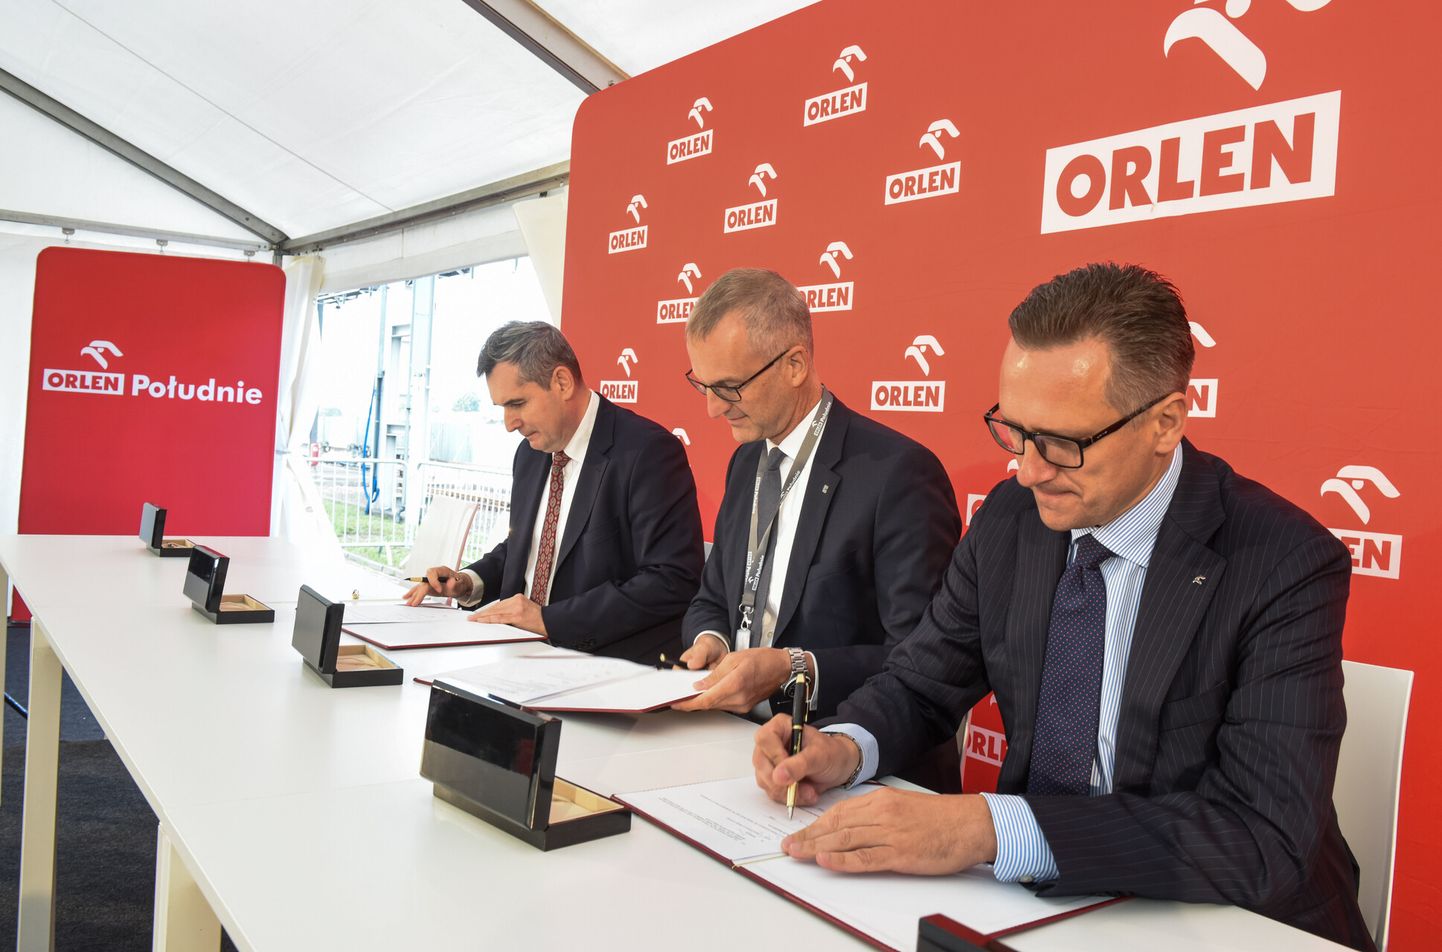 Clarianti ja Orleni juhid 2019. aasta septembris Sunliquid-tehnoloogia litsentsilepingut alla kirjutamas. Kas Orlenil on sellega täna, pärast Rumeenia tehase sulgemist, midagi peale hakata?